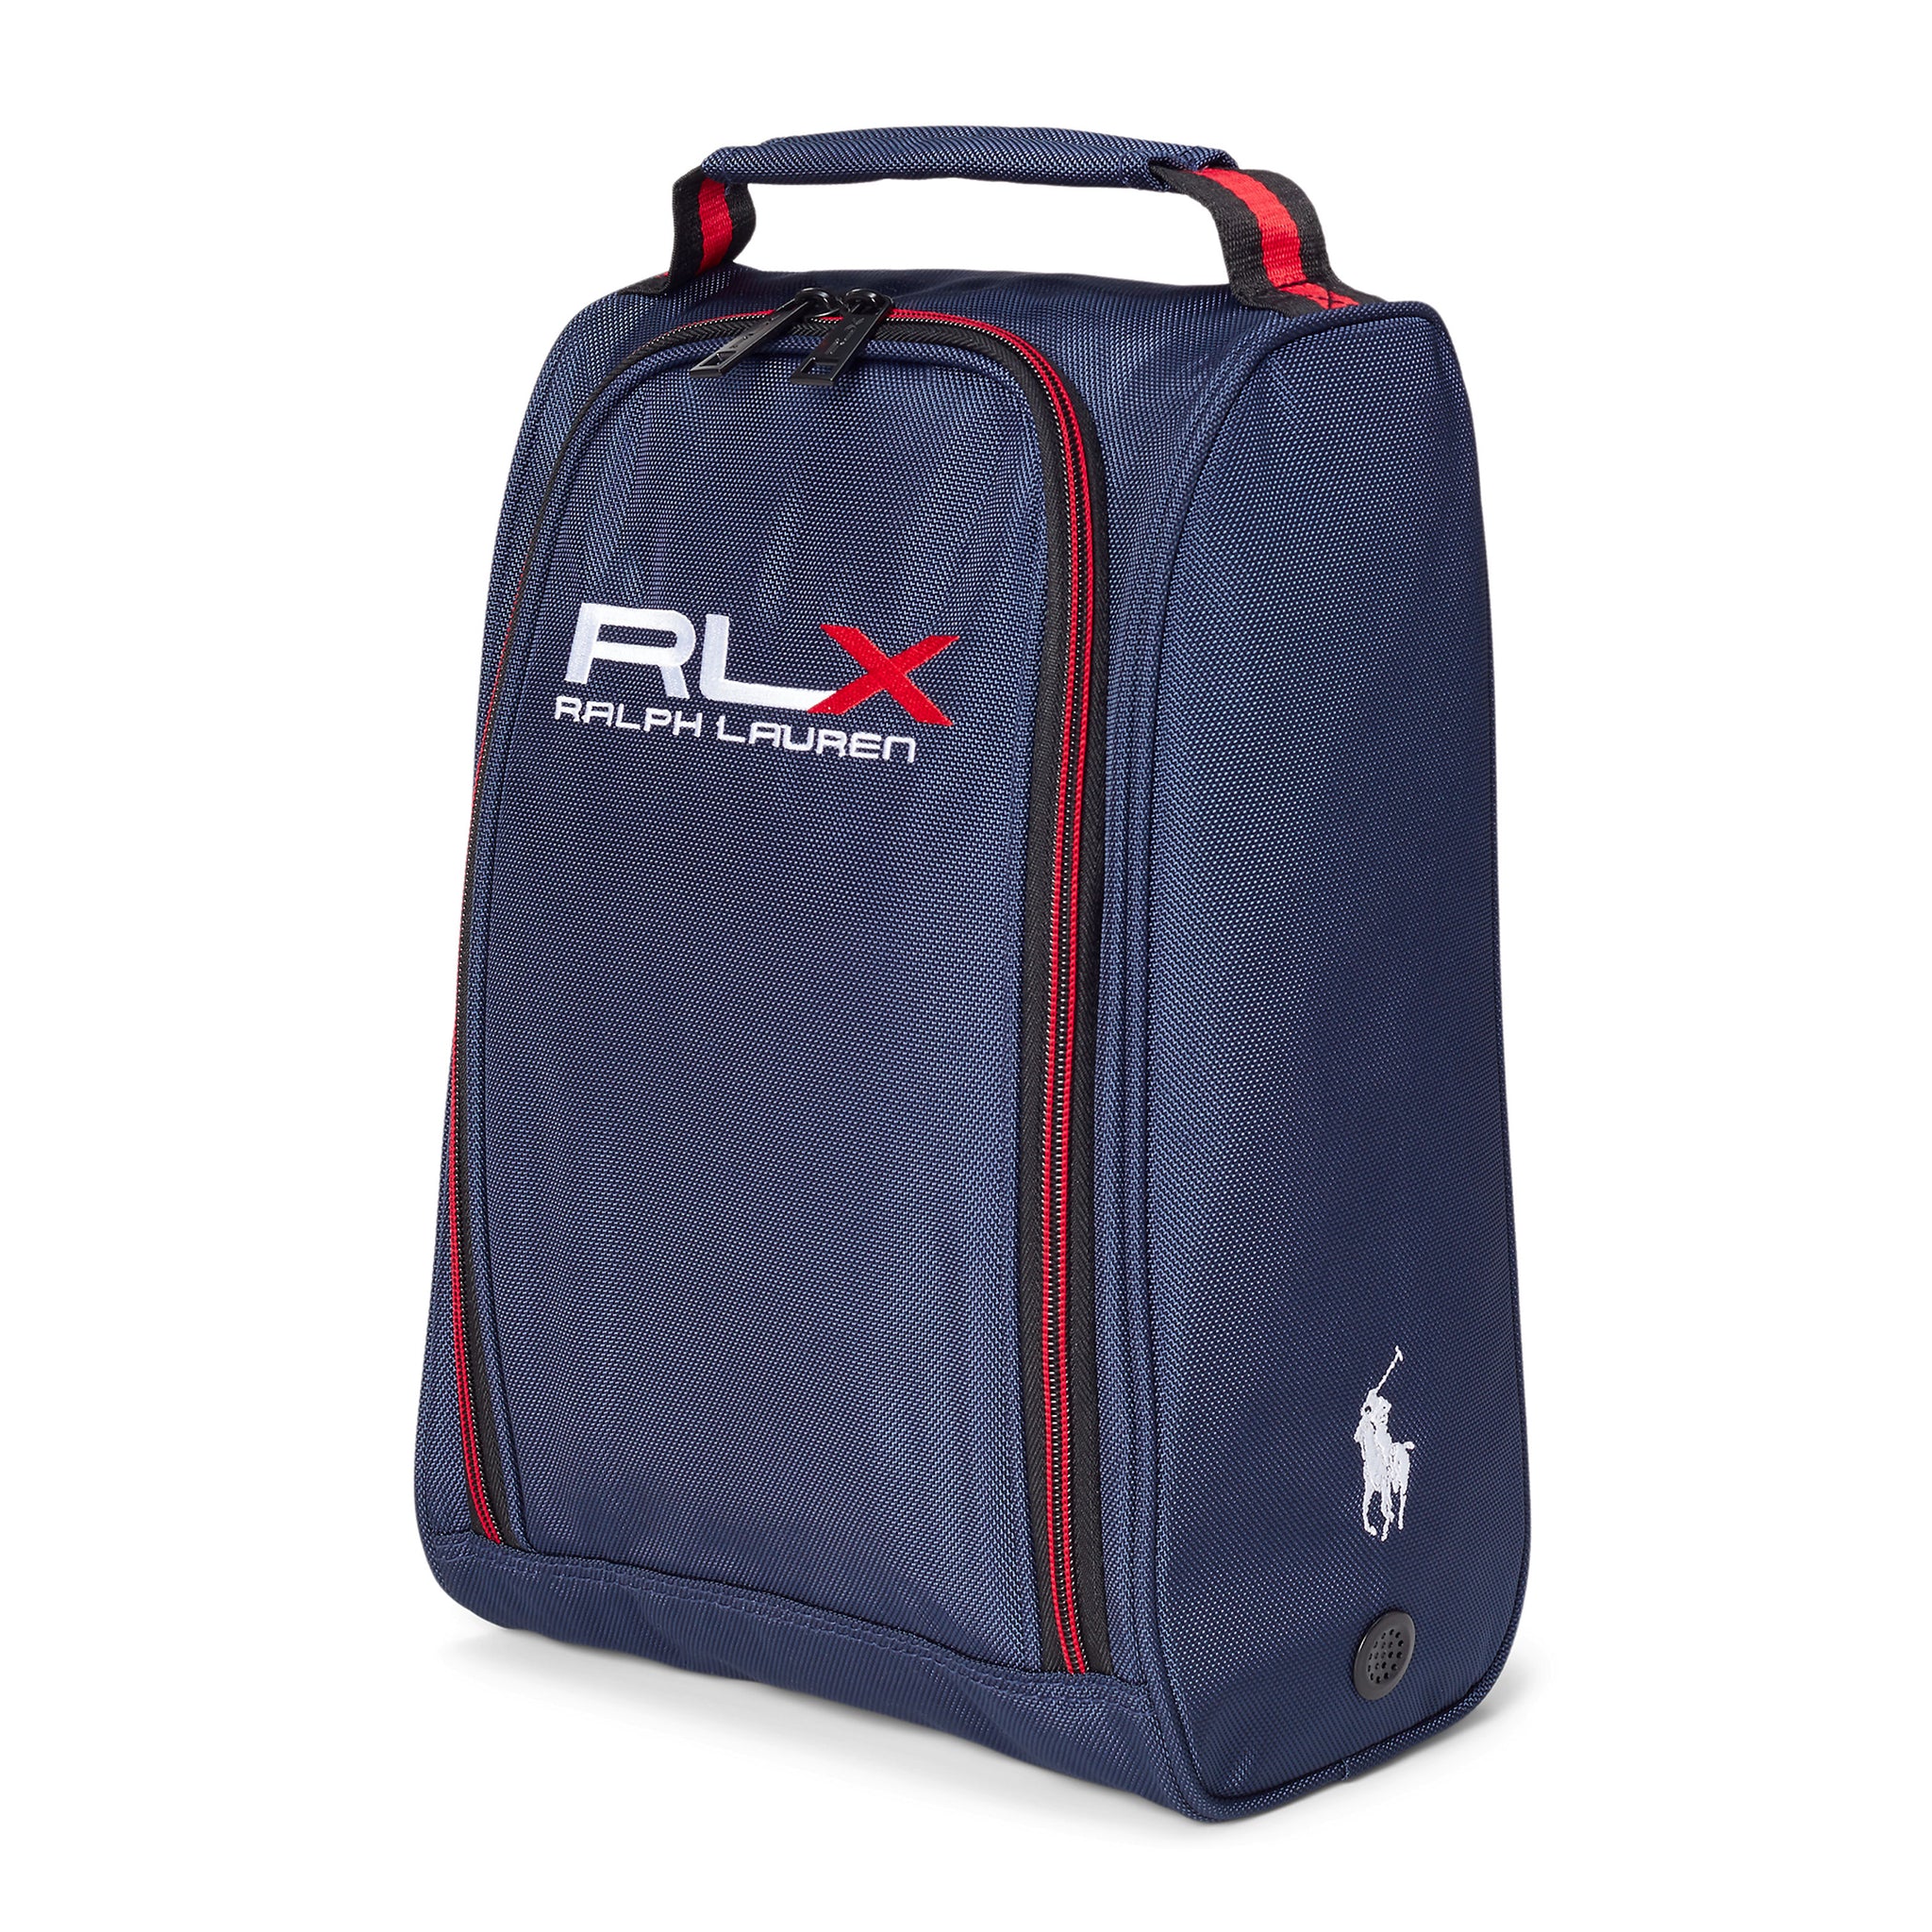 rlx-ralph-lauren-golf-shoe-bag-453908652-navy-002